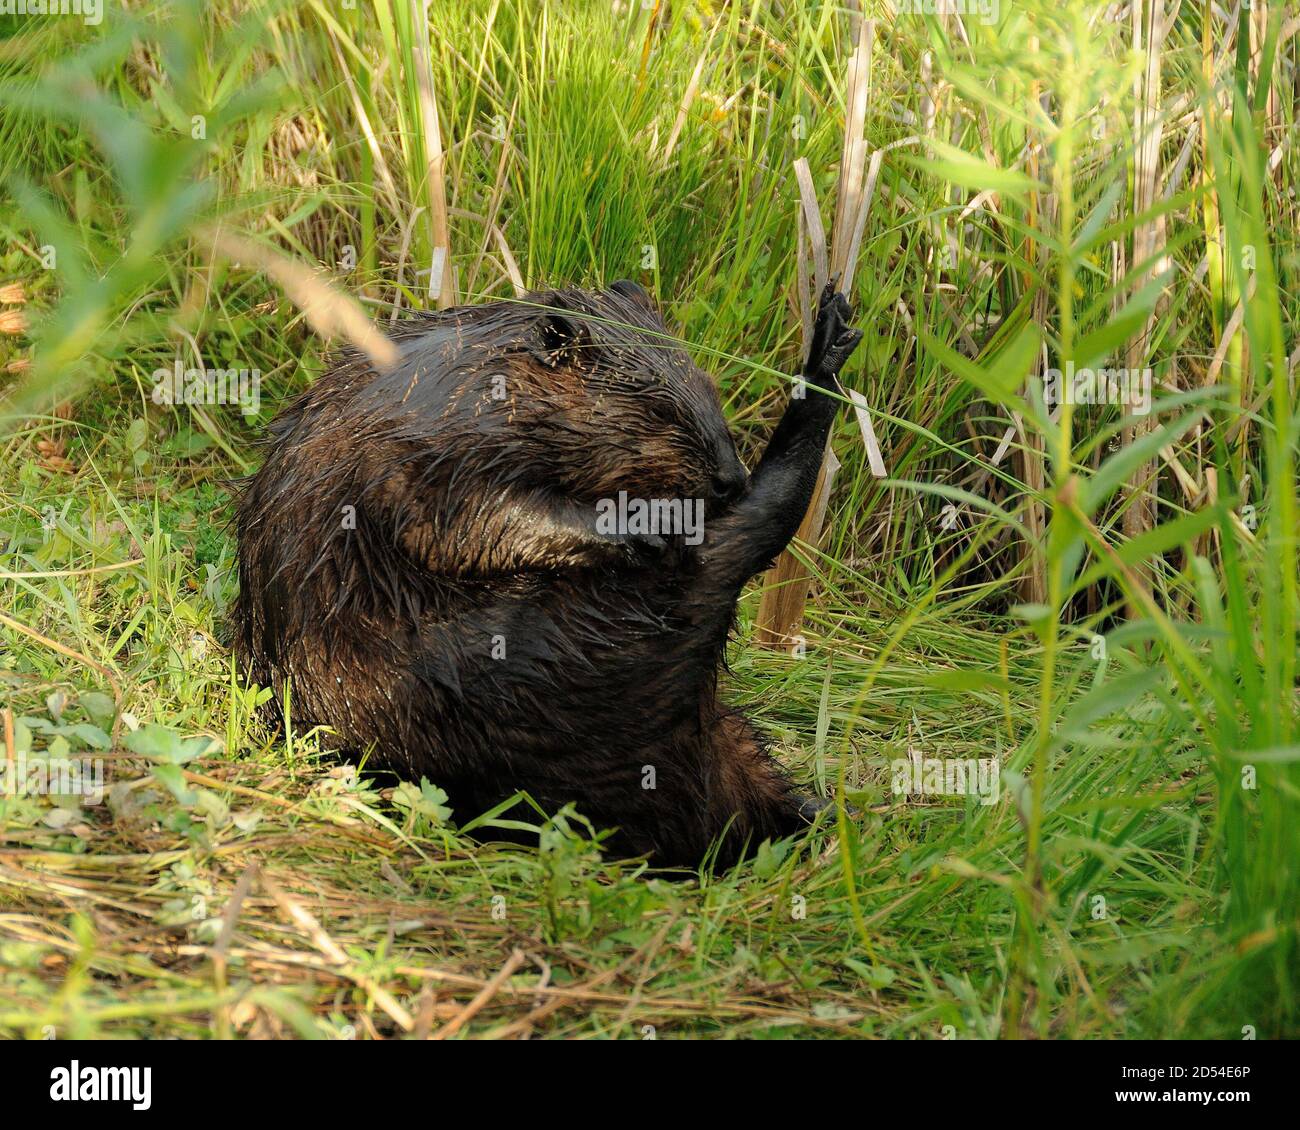 Beaver gros plan visualisez le toilettage et la position assise sur l'herbe présentant la fourrure humide brune, le corps, la tête, les yeux, les oreilles, la queue, dans son environnement et son habitat. Banque D'Images